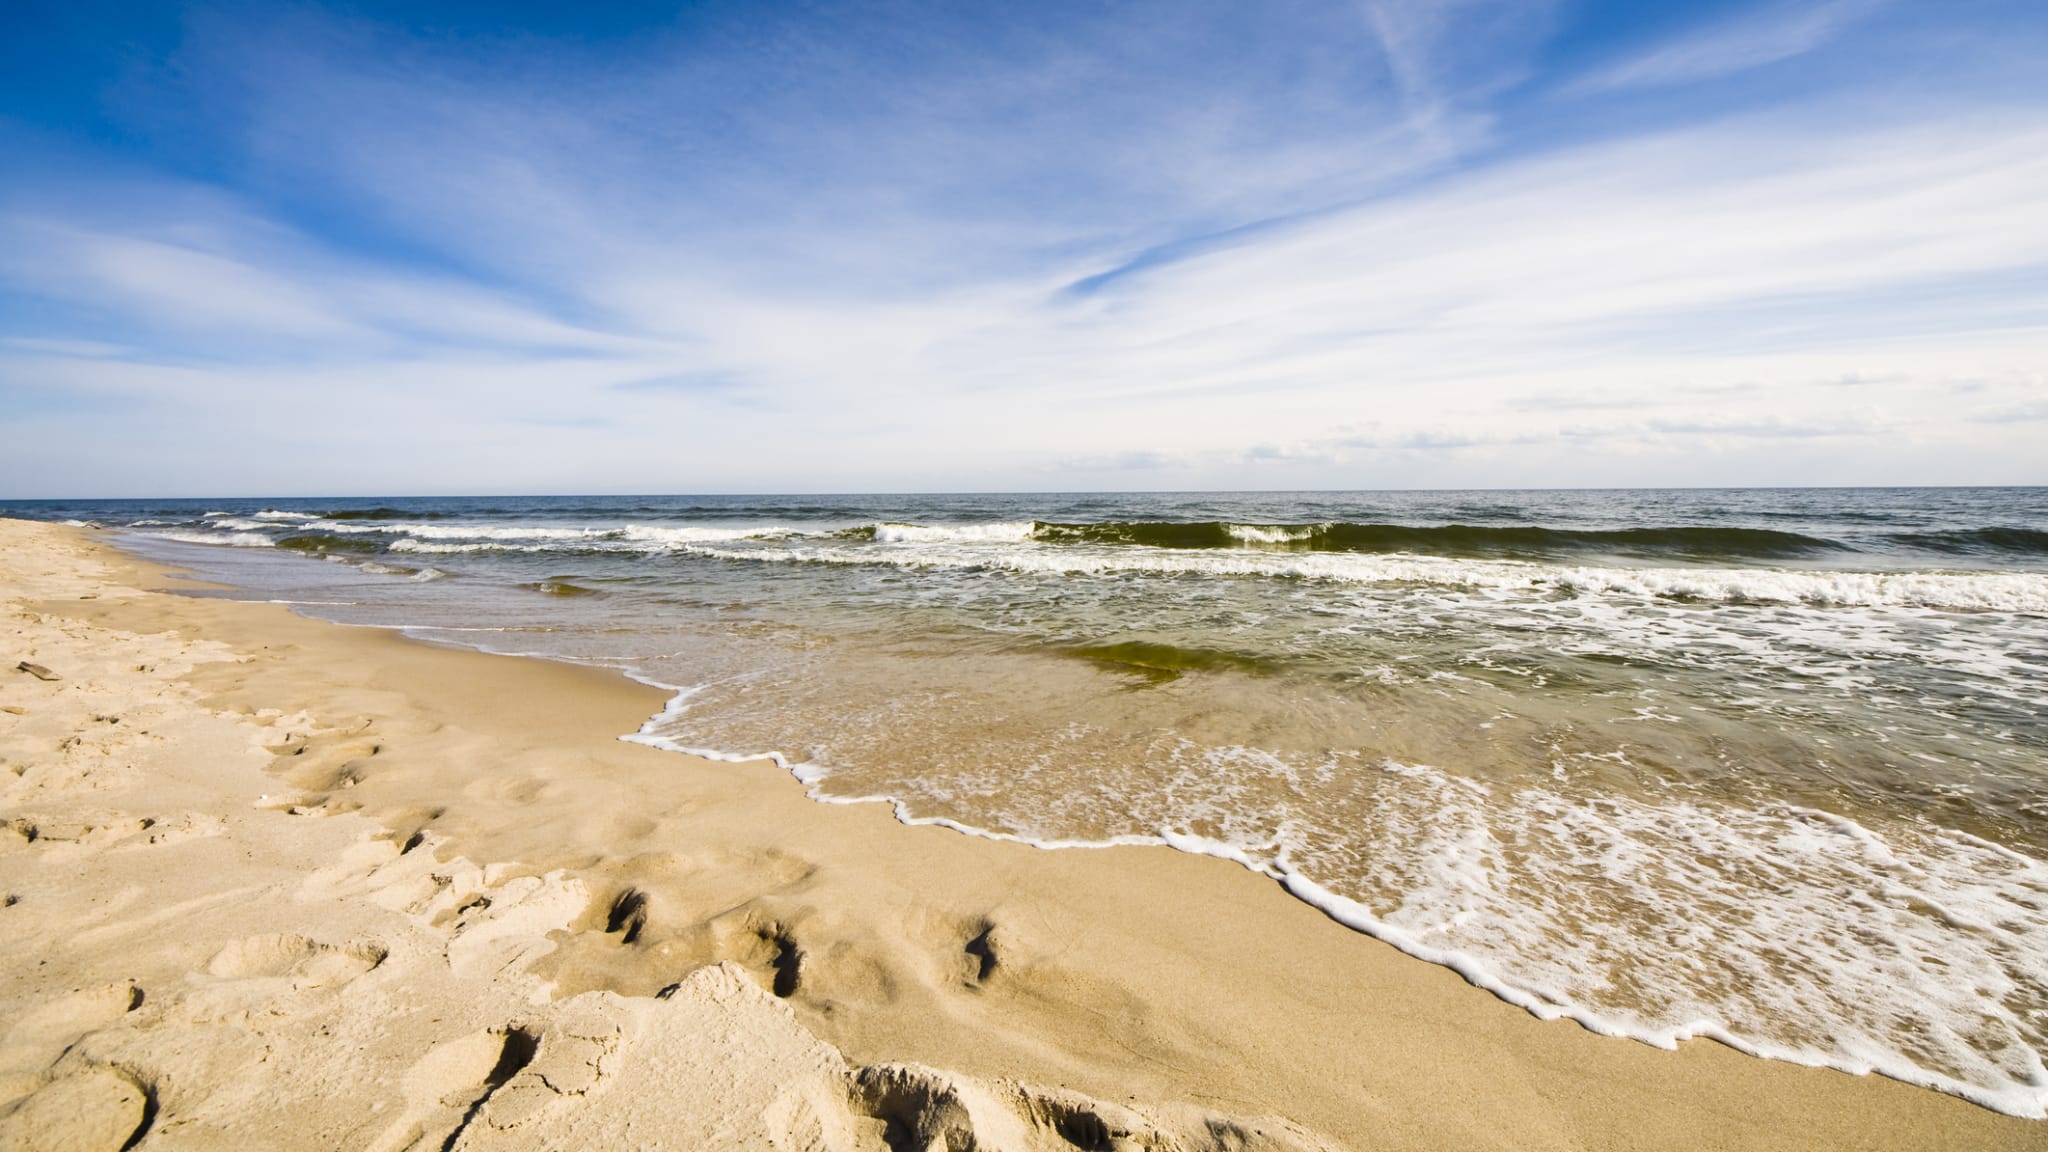 Ein Strand an der Ostsee, Schleswig-Holstein, Deutschland © Dimidrolius/iStock / Getty Images Plus via Getty Images